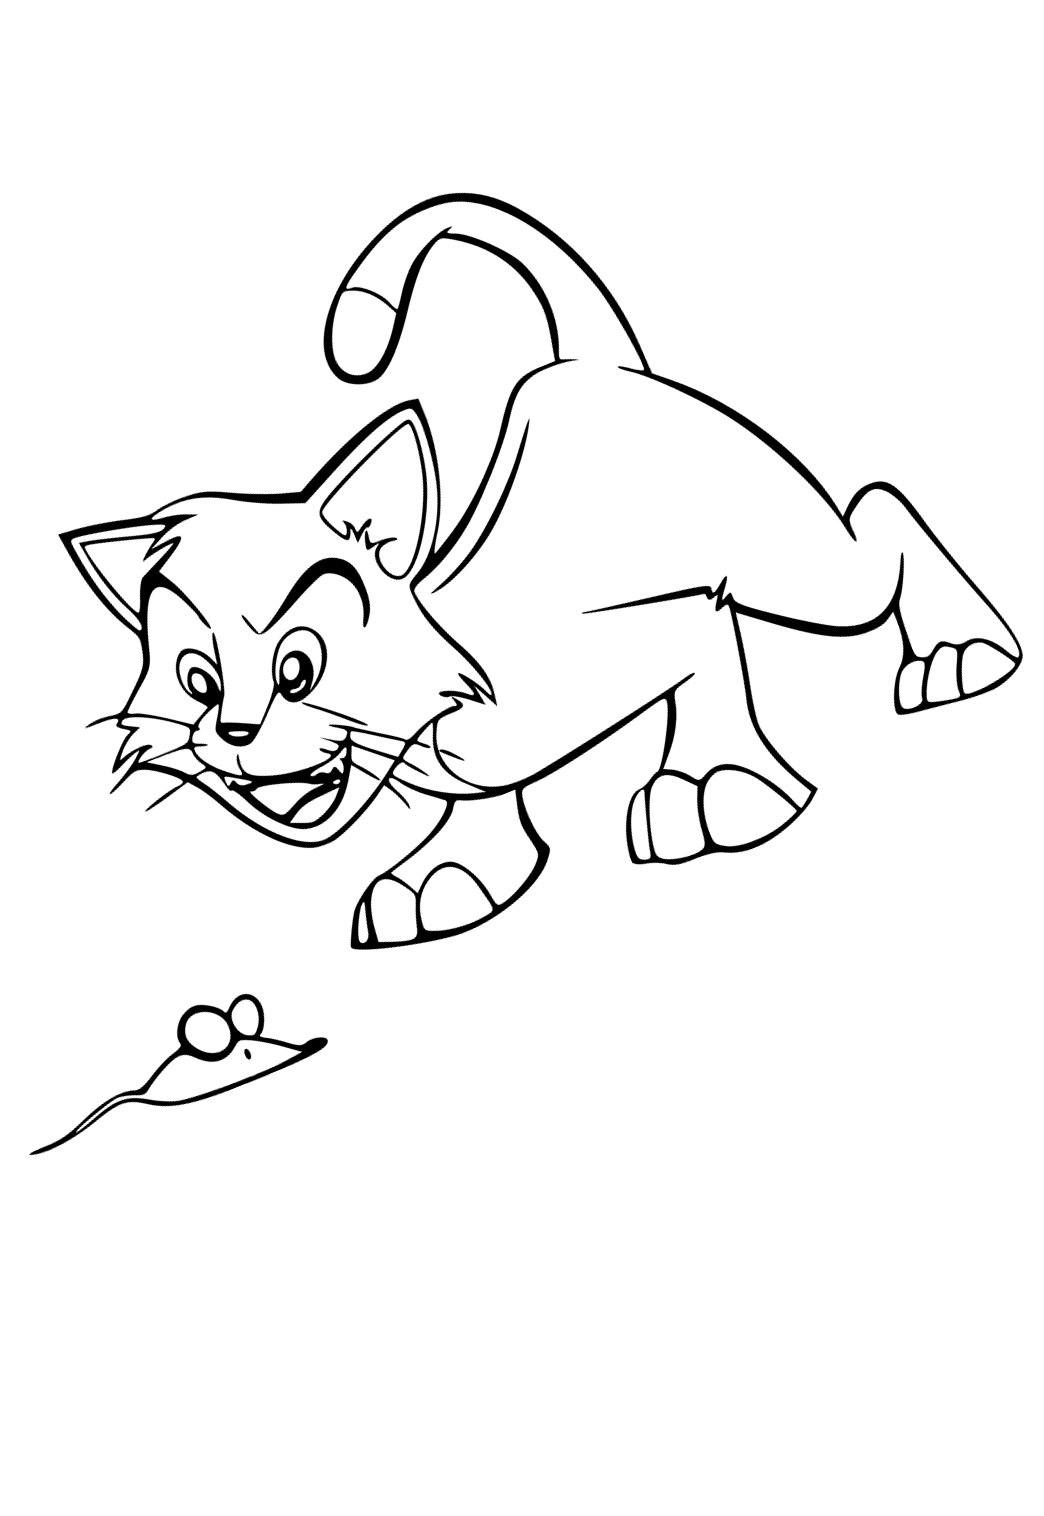 Desenho e Imagem Gato de Desenho Animado Rato para Colorir e